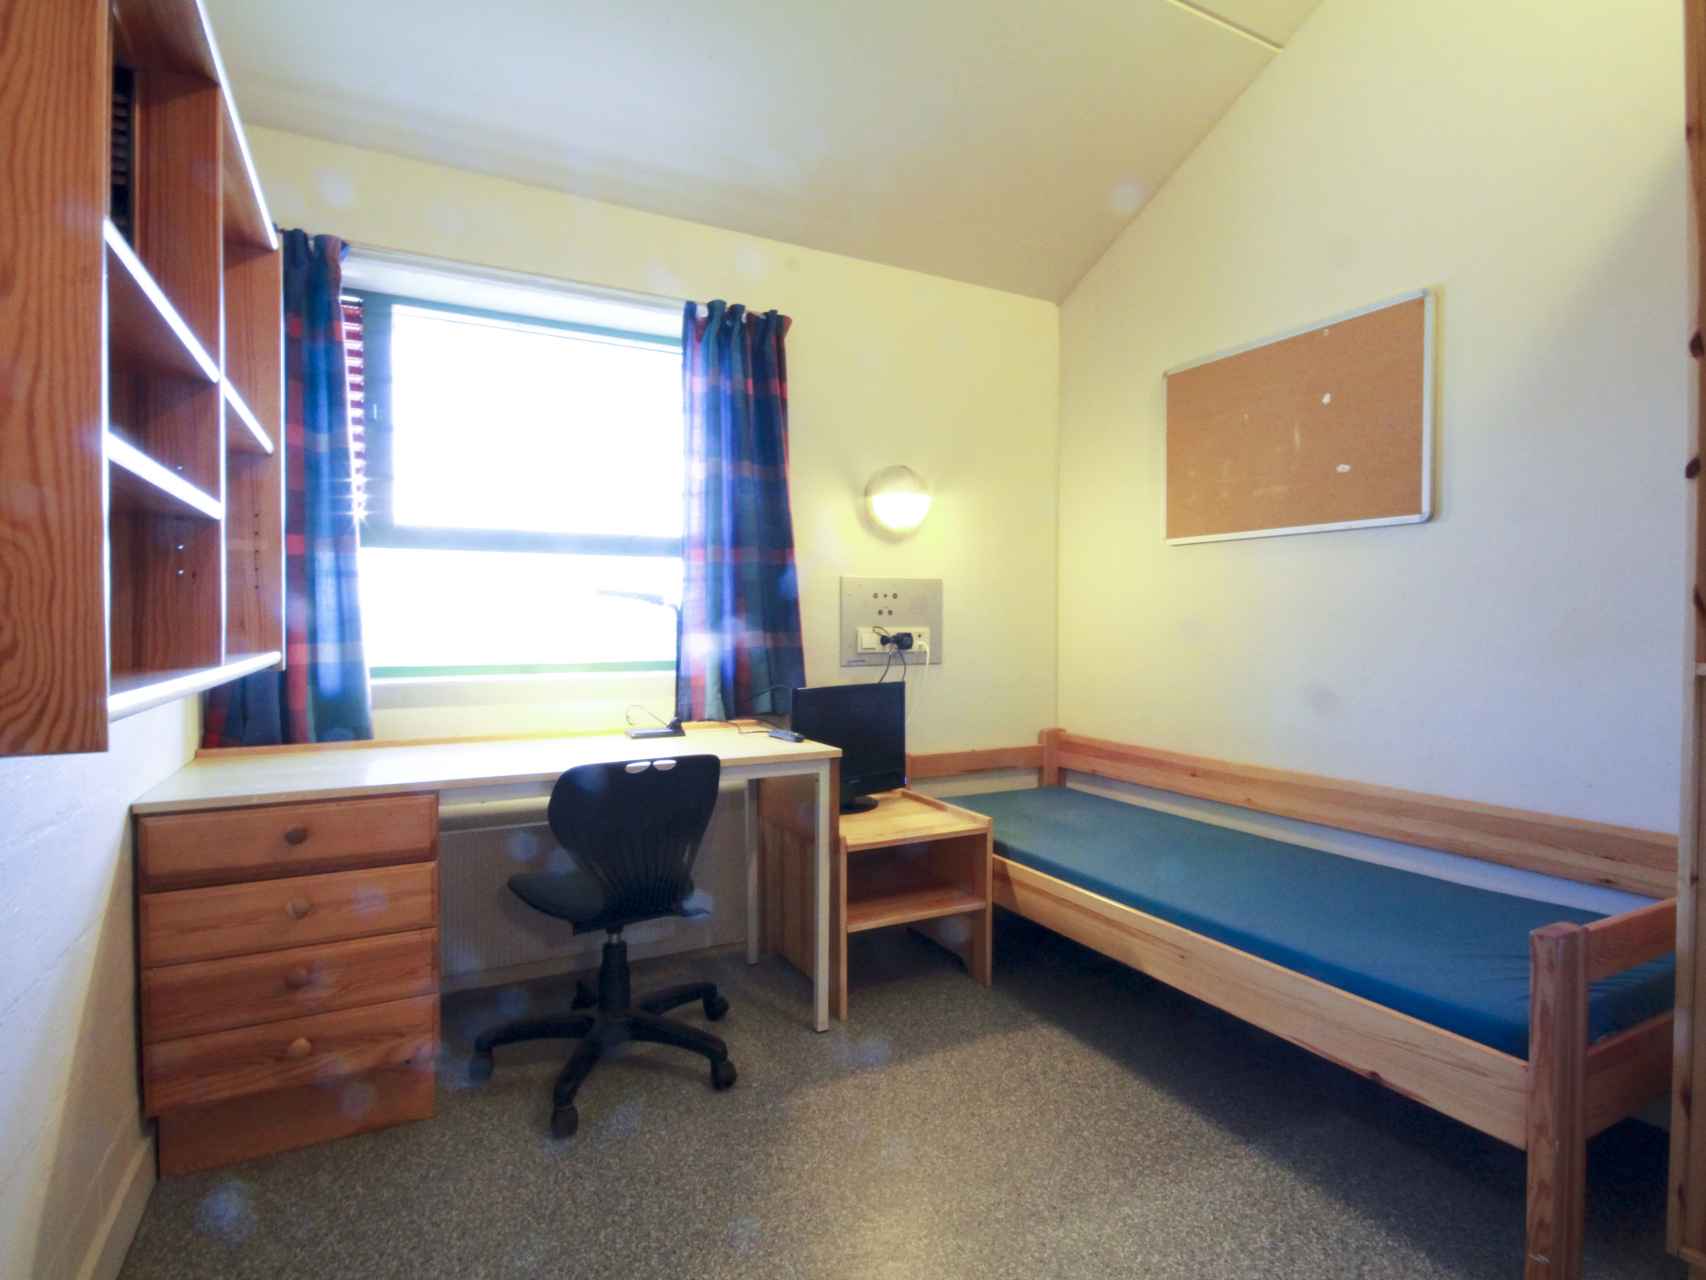 La política penitenciaria noruega procura normalizar la vida en prisión.